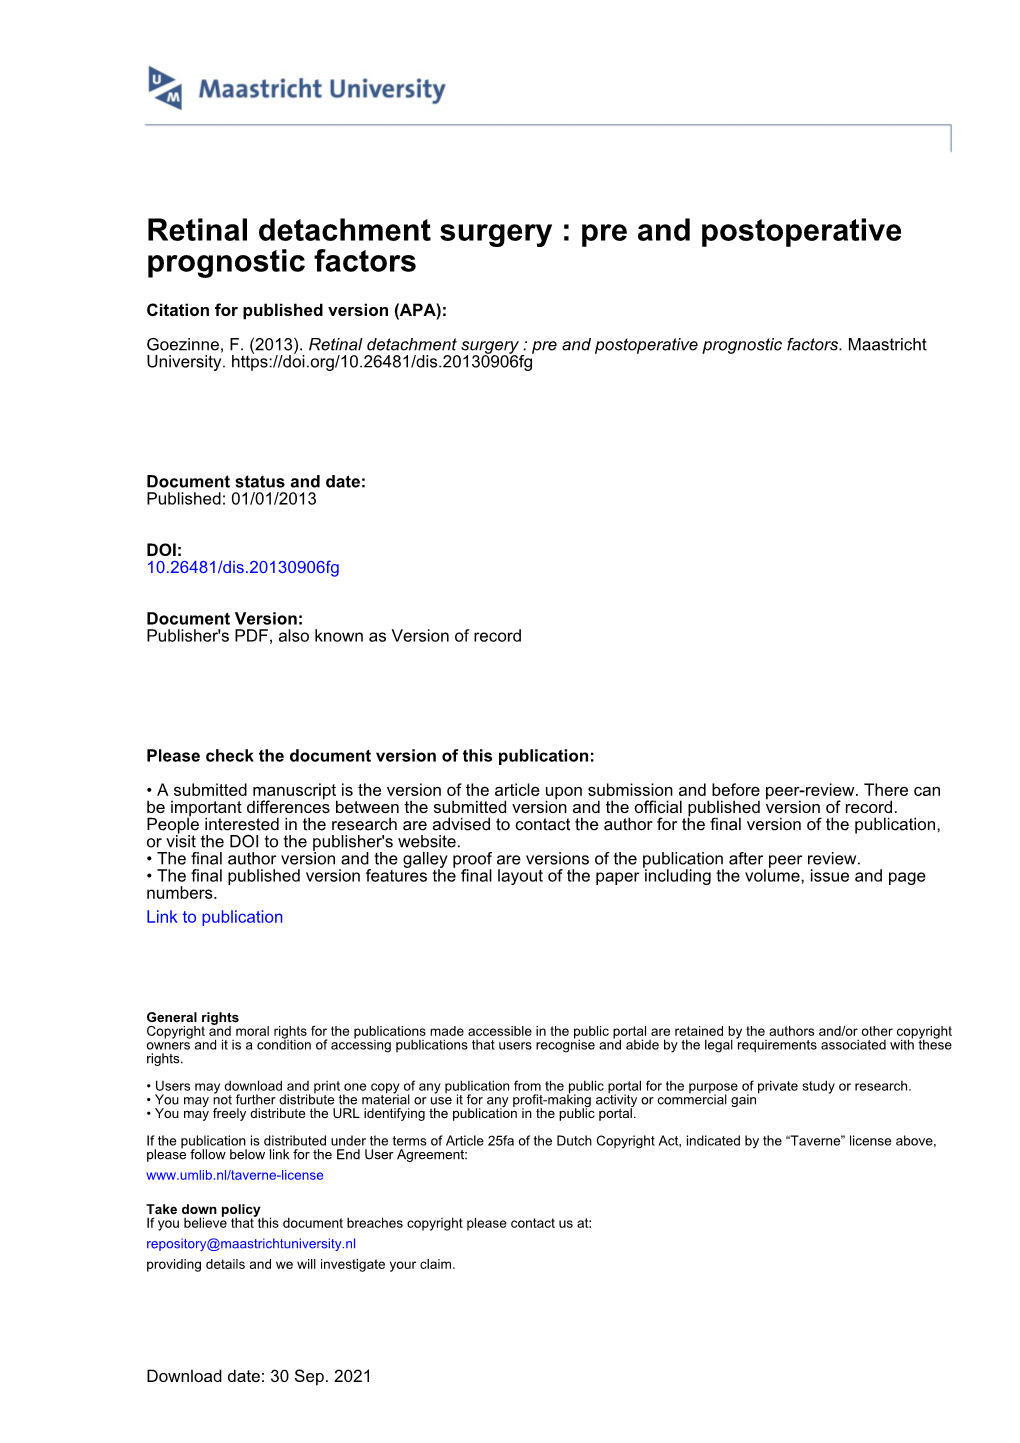 Retinal Detachment Surgery : Pre and Postoperative Prognostic Factors